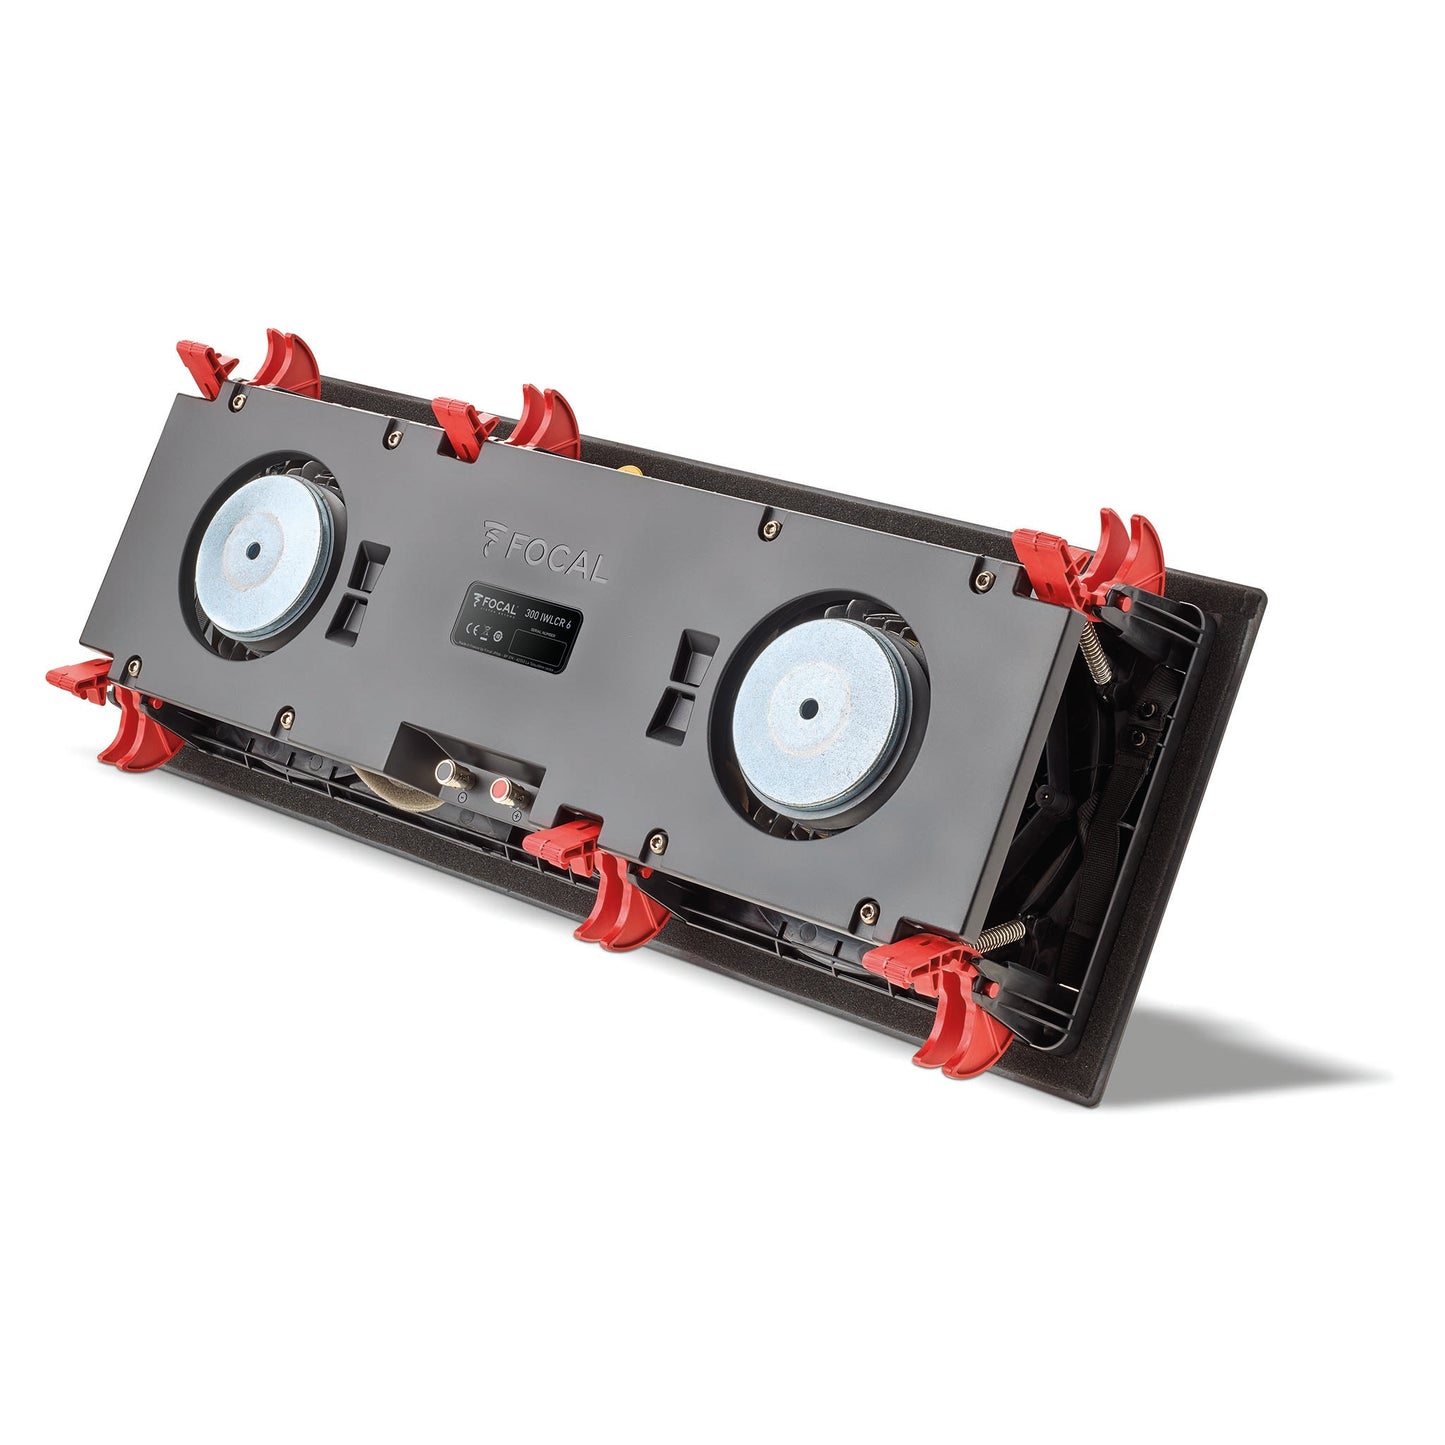 Focal 300IWLCR6 In-Wall Loudspeaker